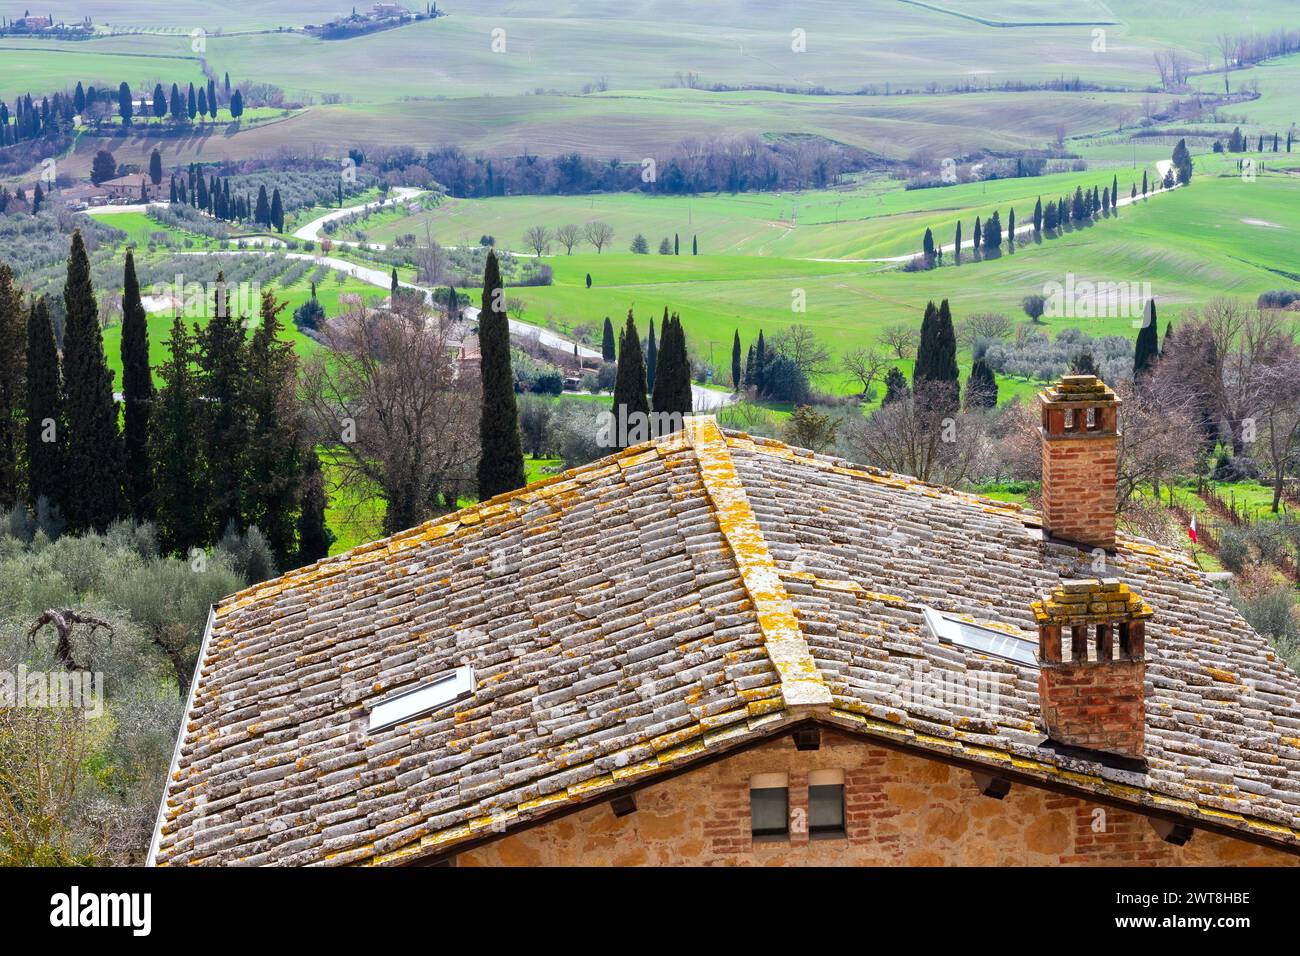 Splendido paesaggio delle verdi colline toscane nella pittoresca Val d'Orcia, vicino a Siena e Firenze, con cipressi, campi e dolci colline. Foto Stock